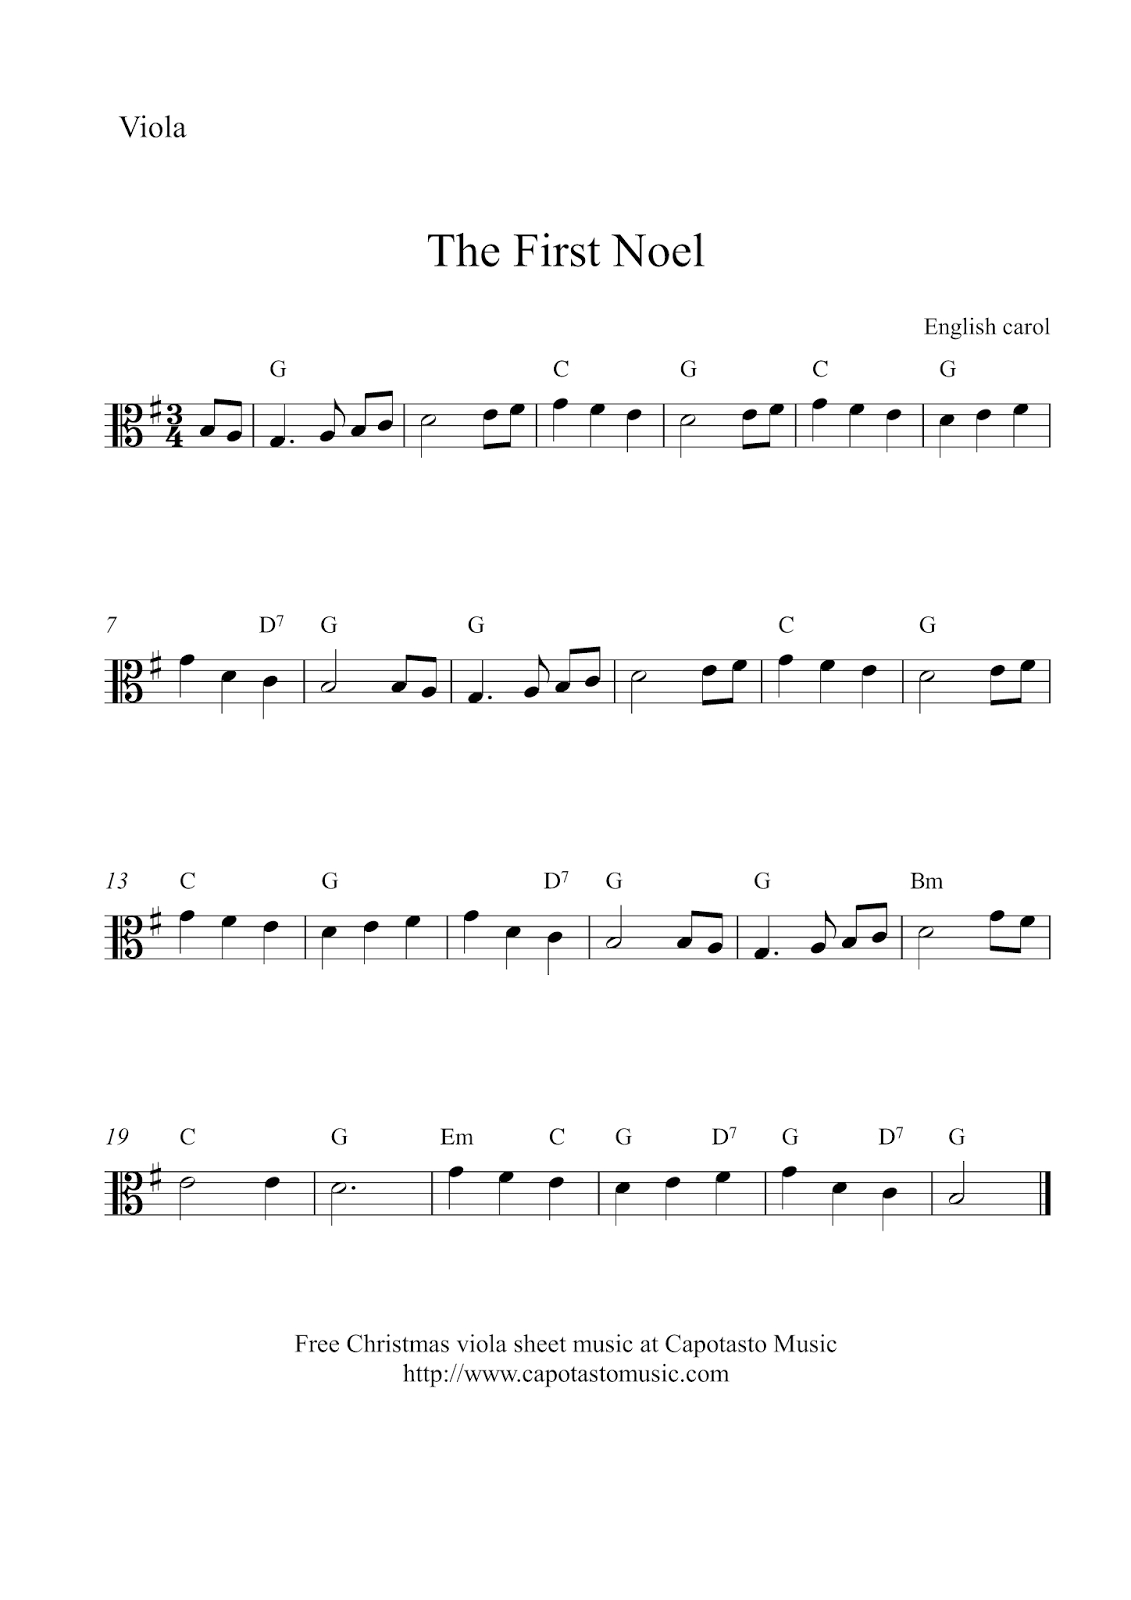 Free Easy Christmas Viola Sheet Music - The First Noel - Viola Sheet Music Free Printable